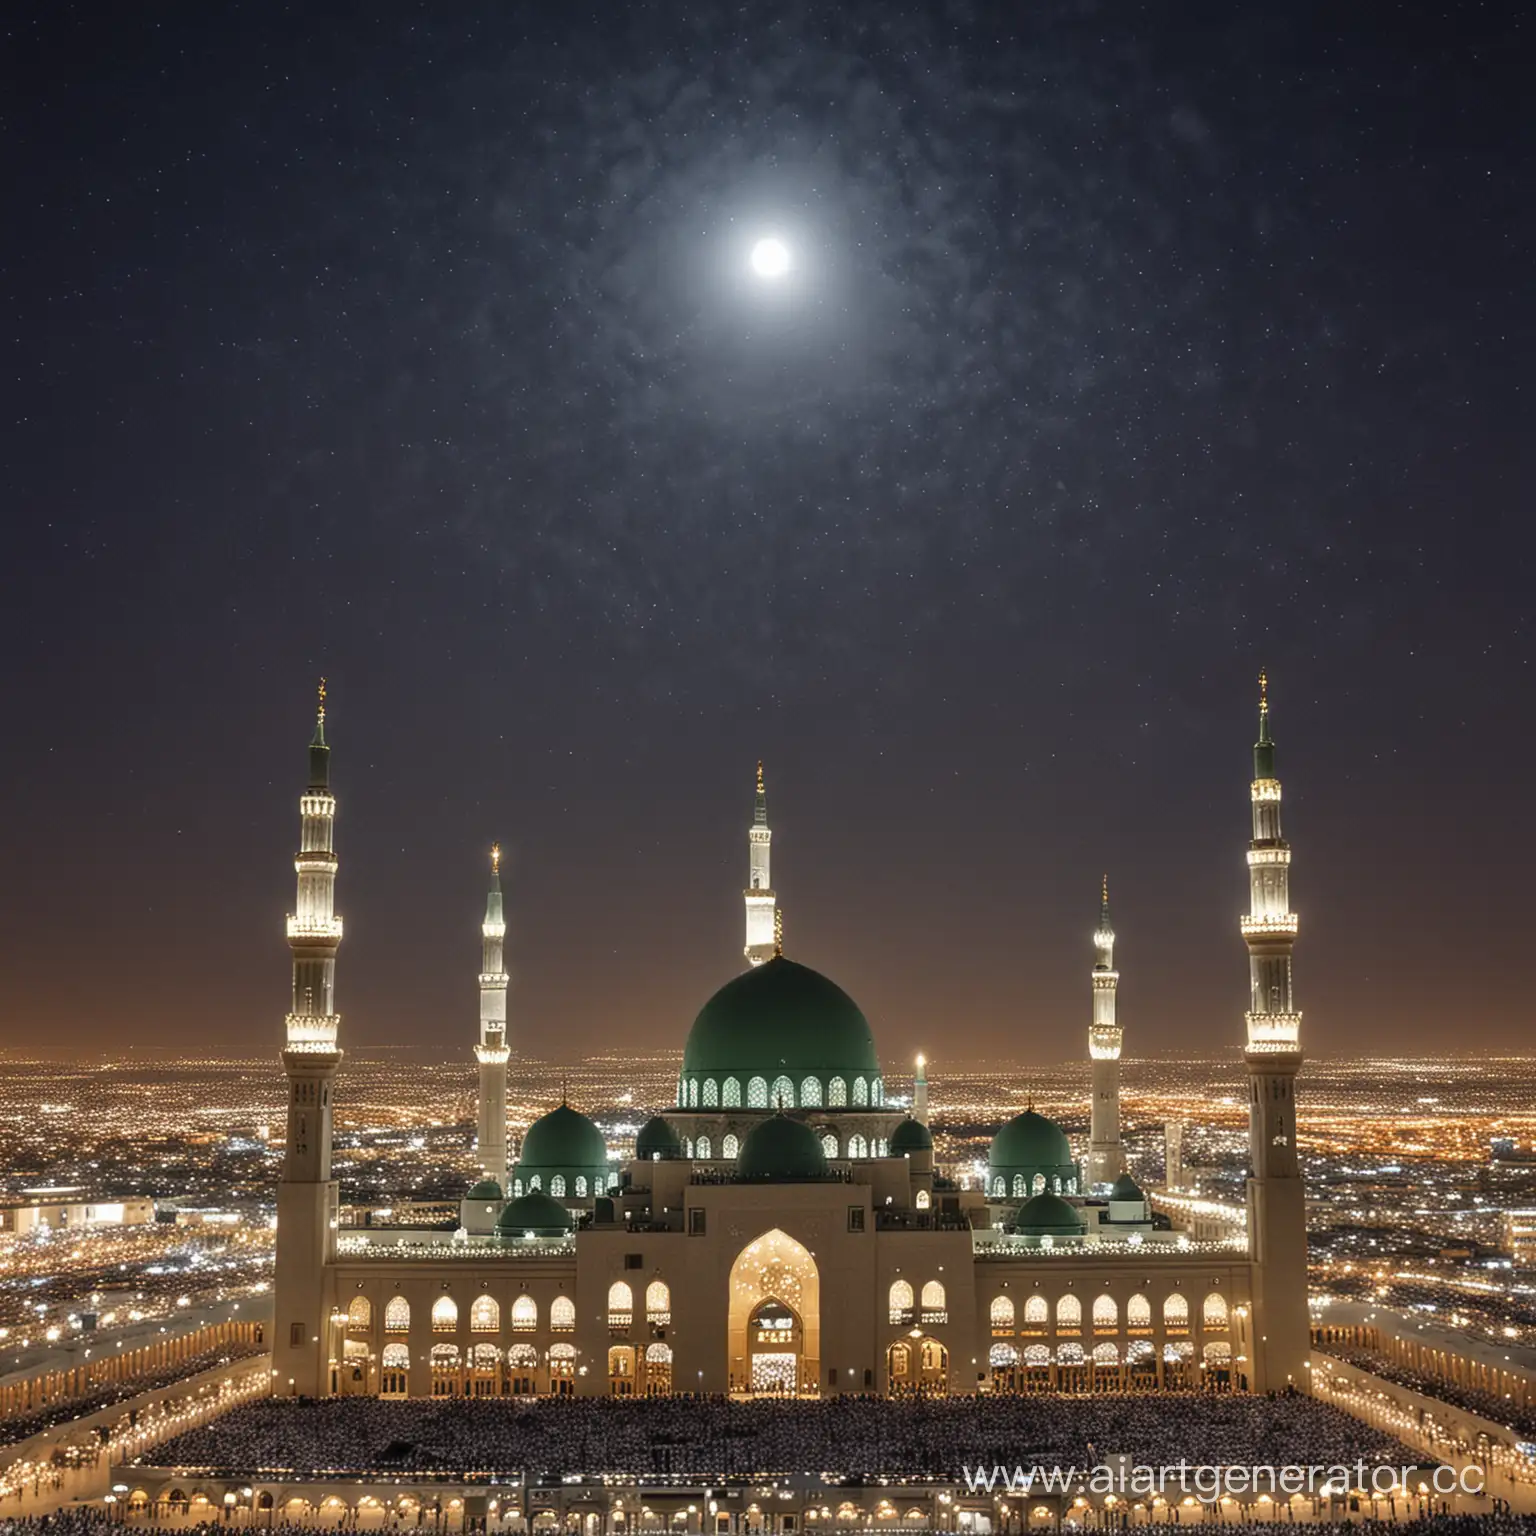  وانتم طيبين صورة المسجد النبوي ومكتوب في السماء كل سنه